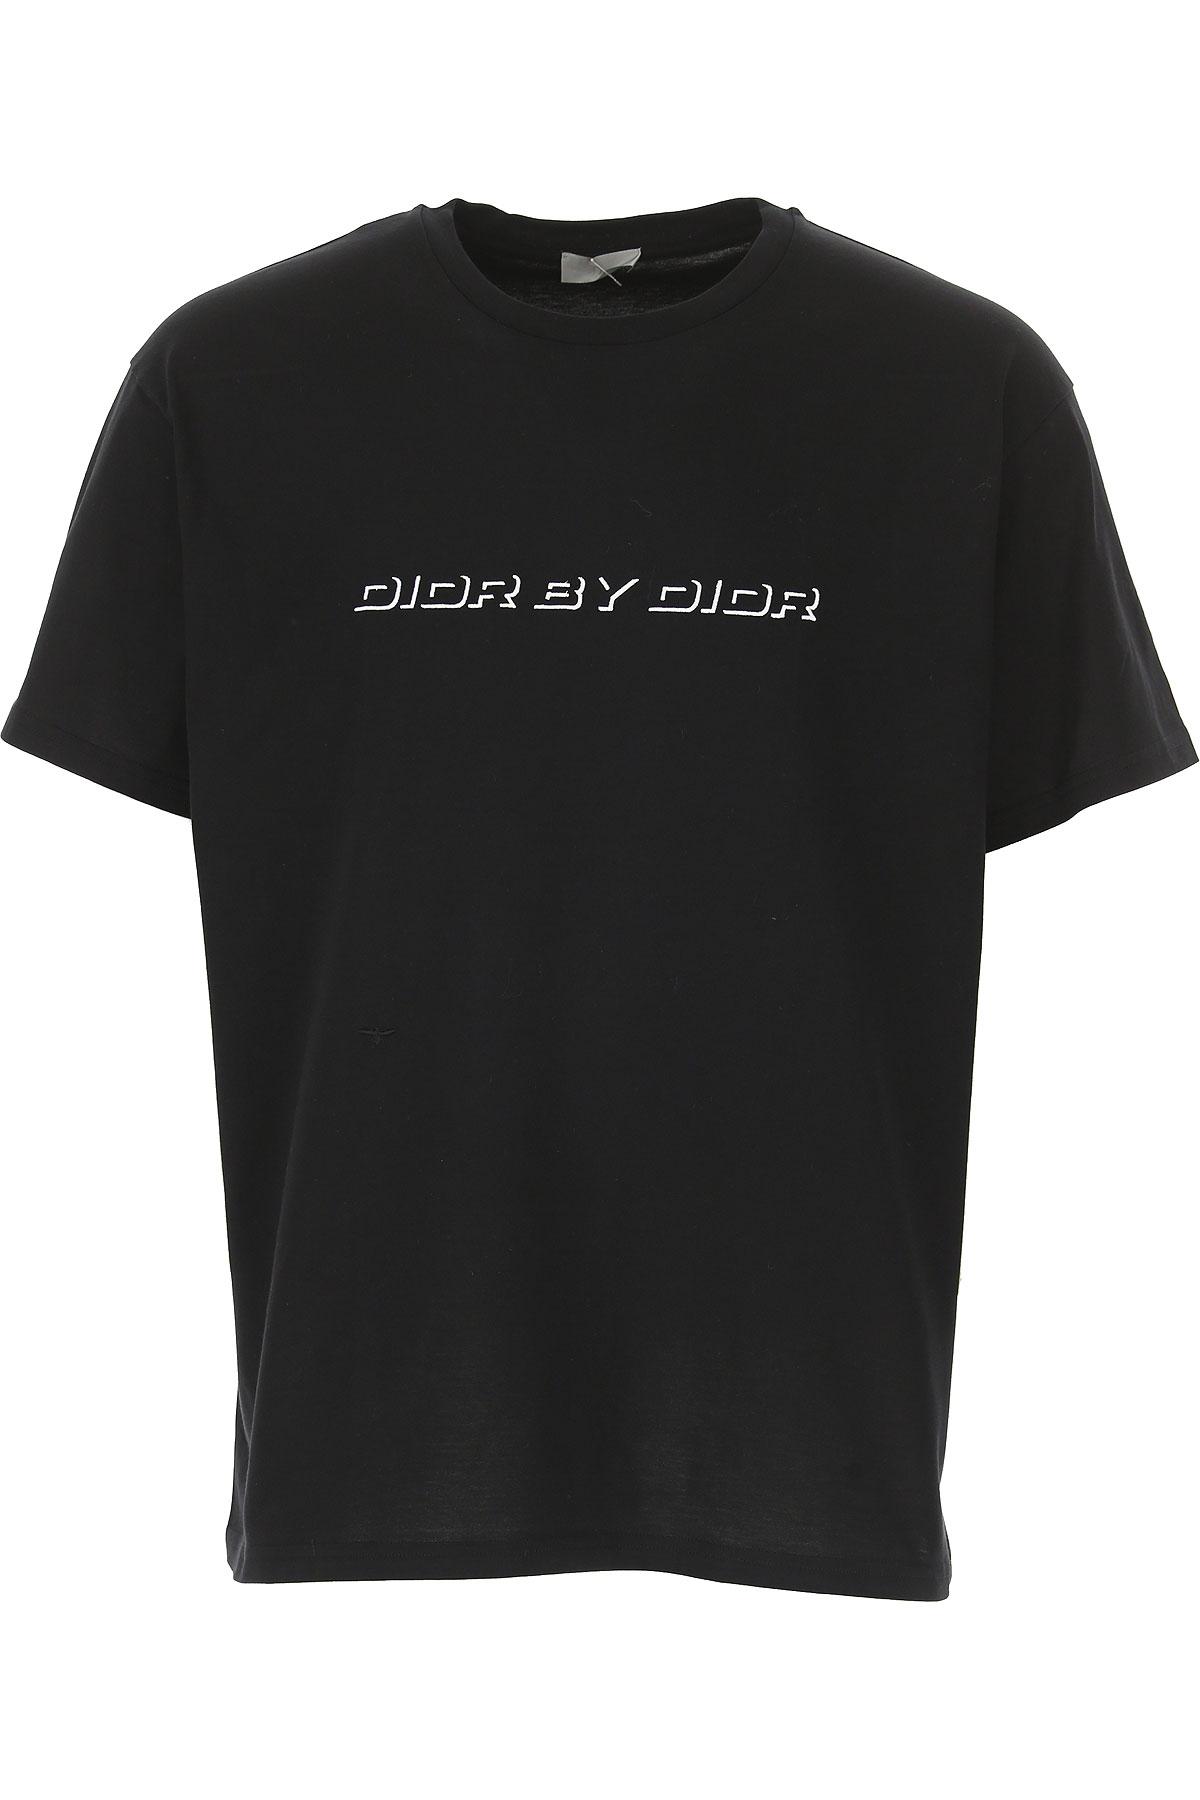 Dior T-shirt For Men On Sale In Outlet in Black for Men - Lyst